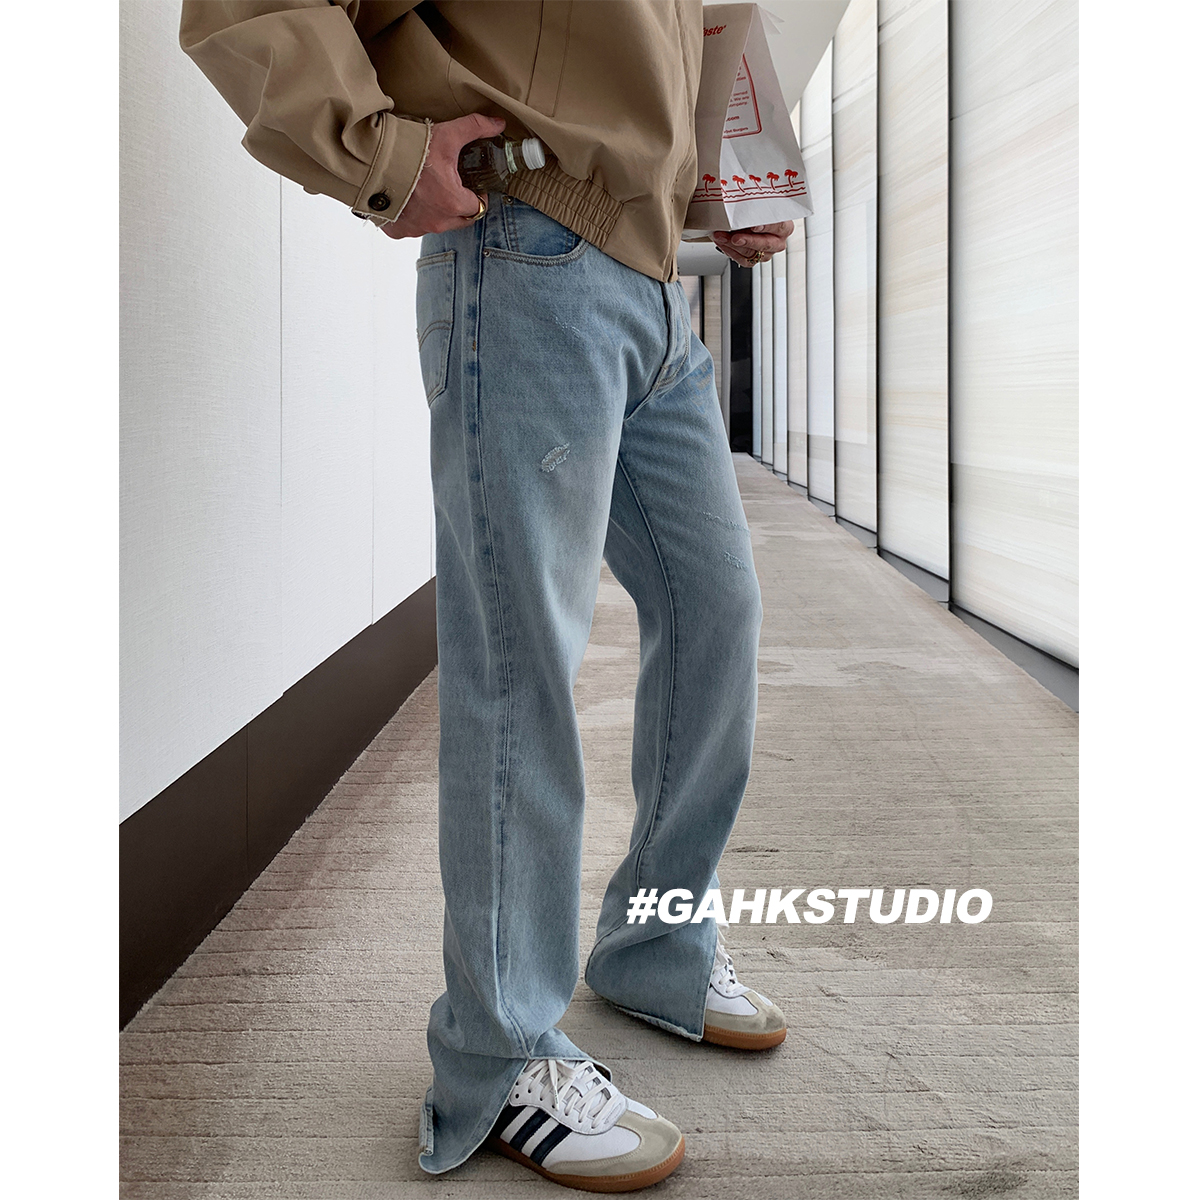 GAHKSTUDIO x MAGADETH合作款设计剪裁开叉显瘦显腿长牛仔裤